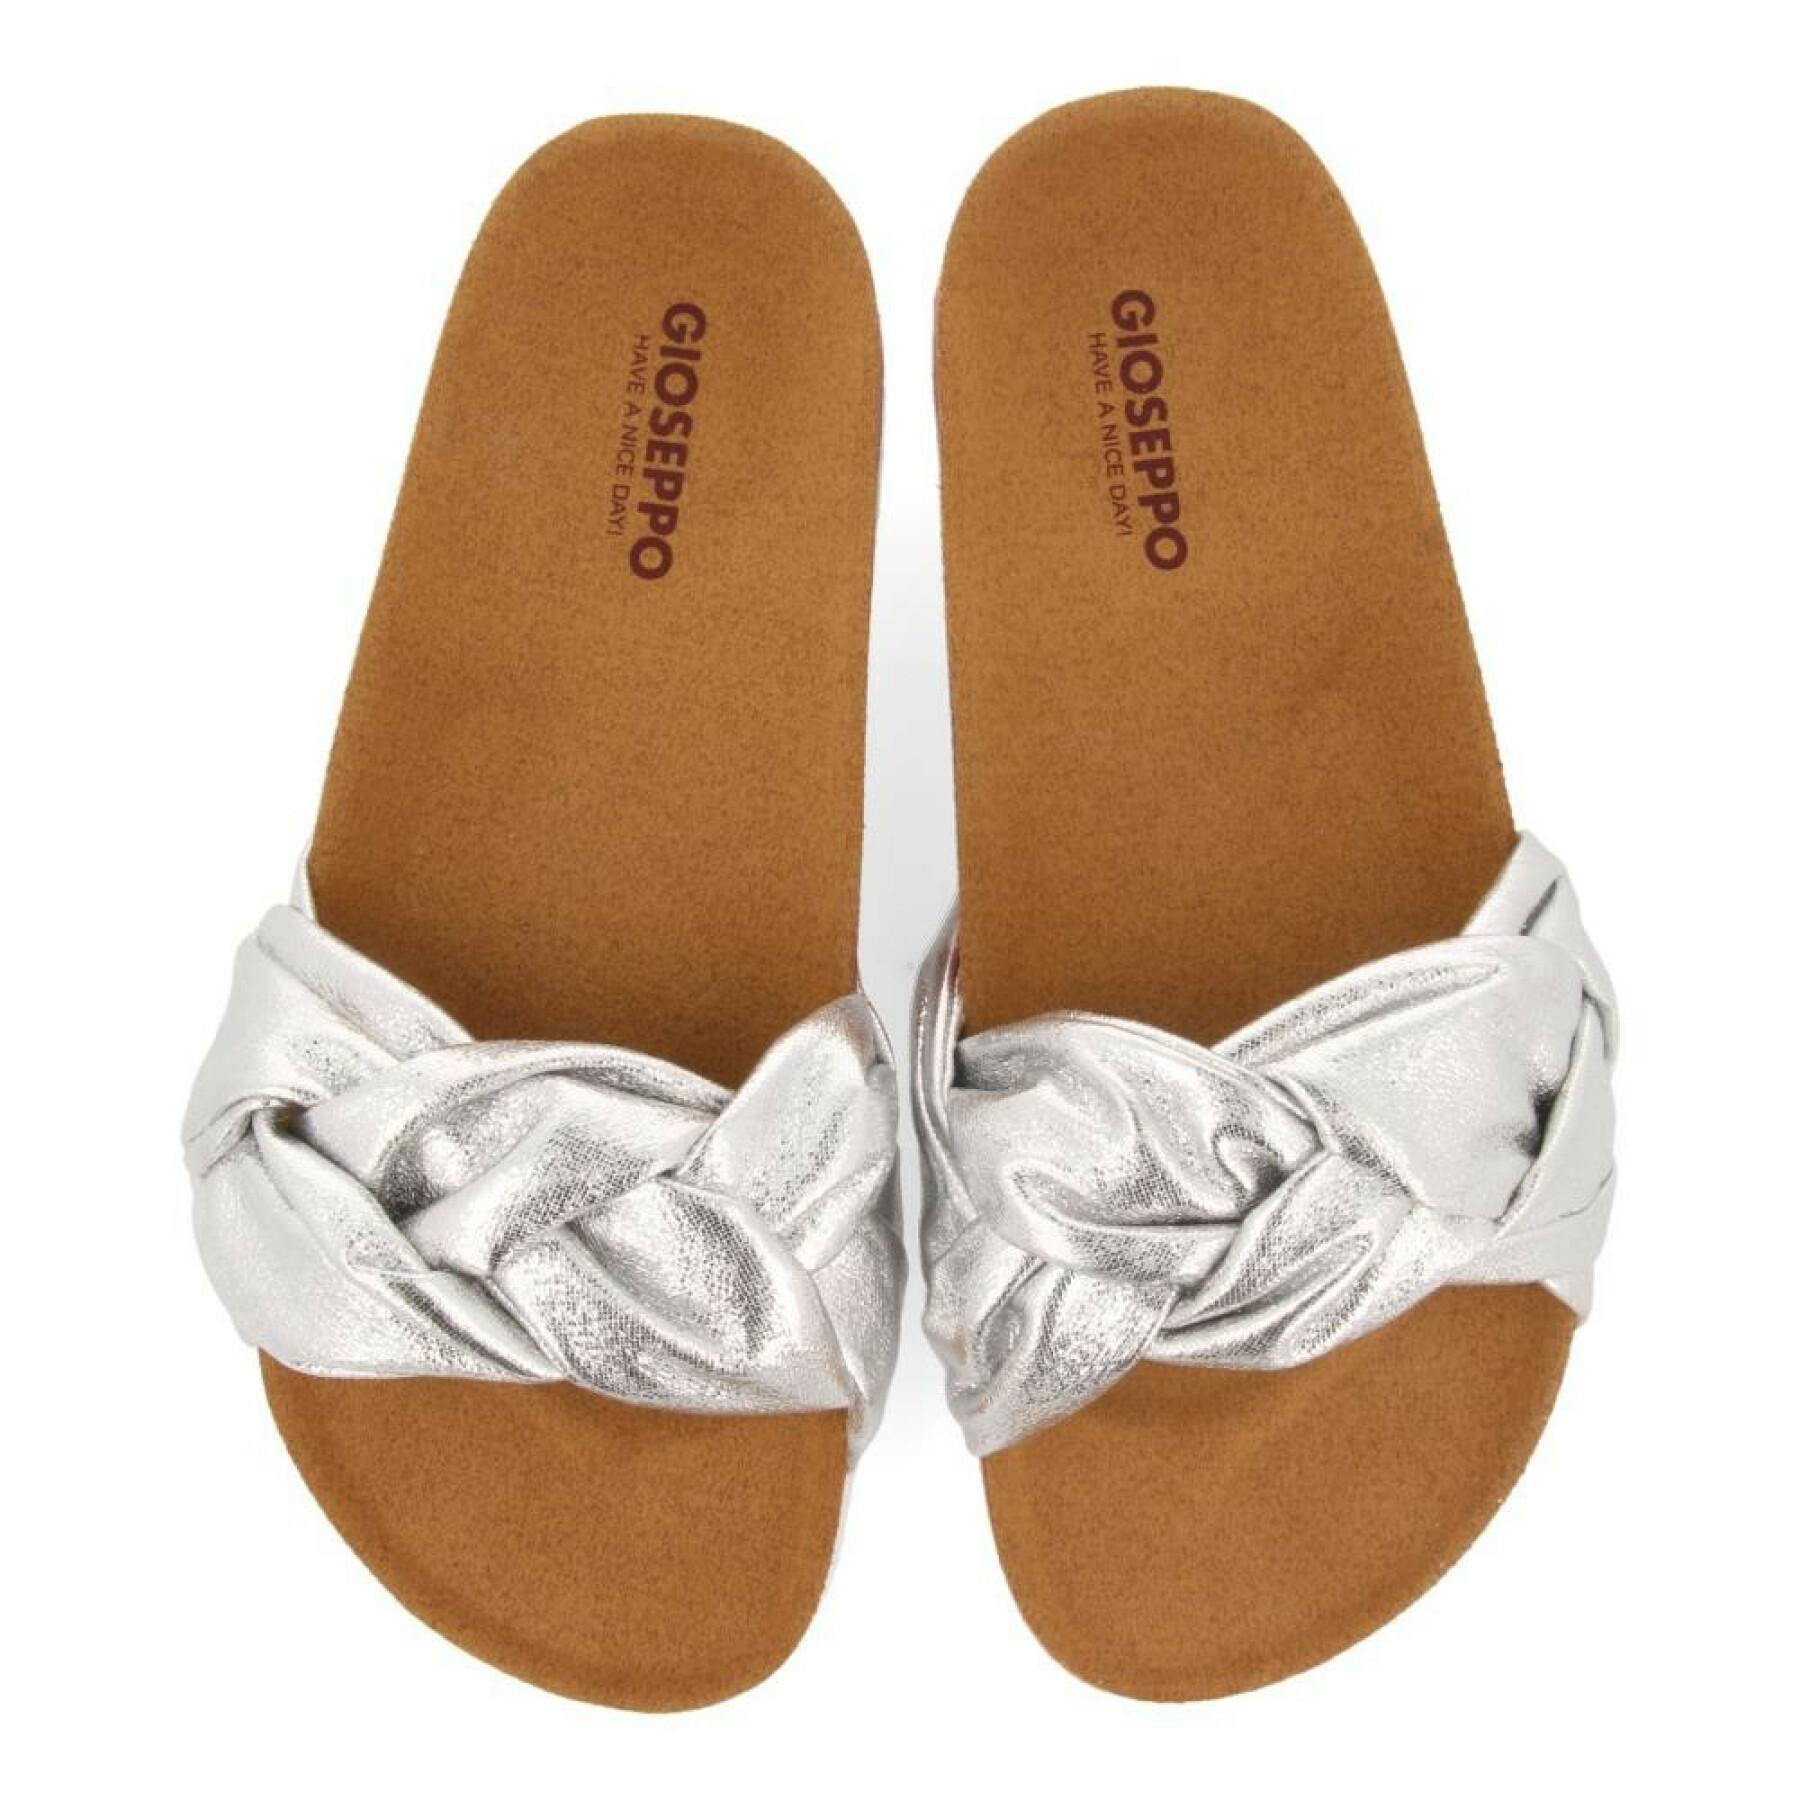 Sandalen für Frauen Gioseppo Yoder